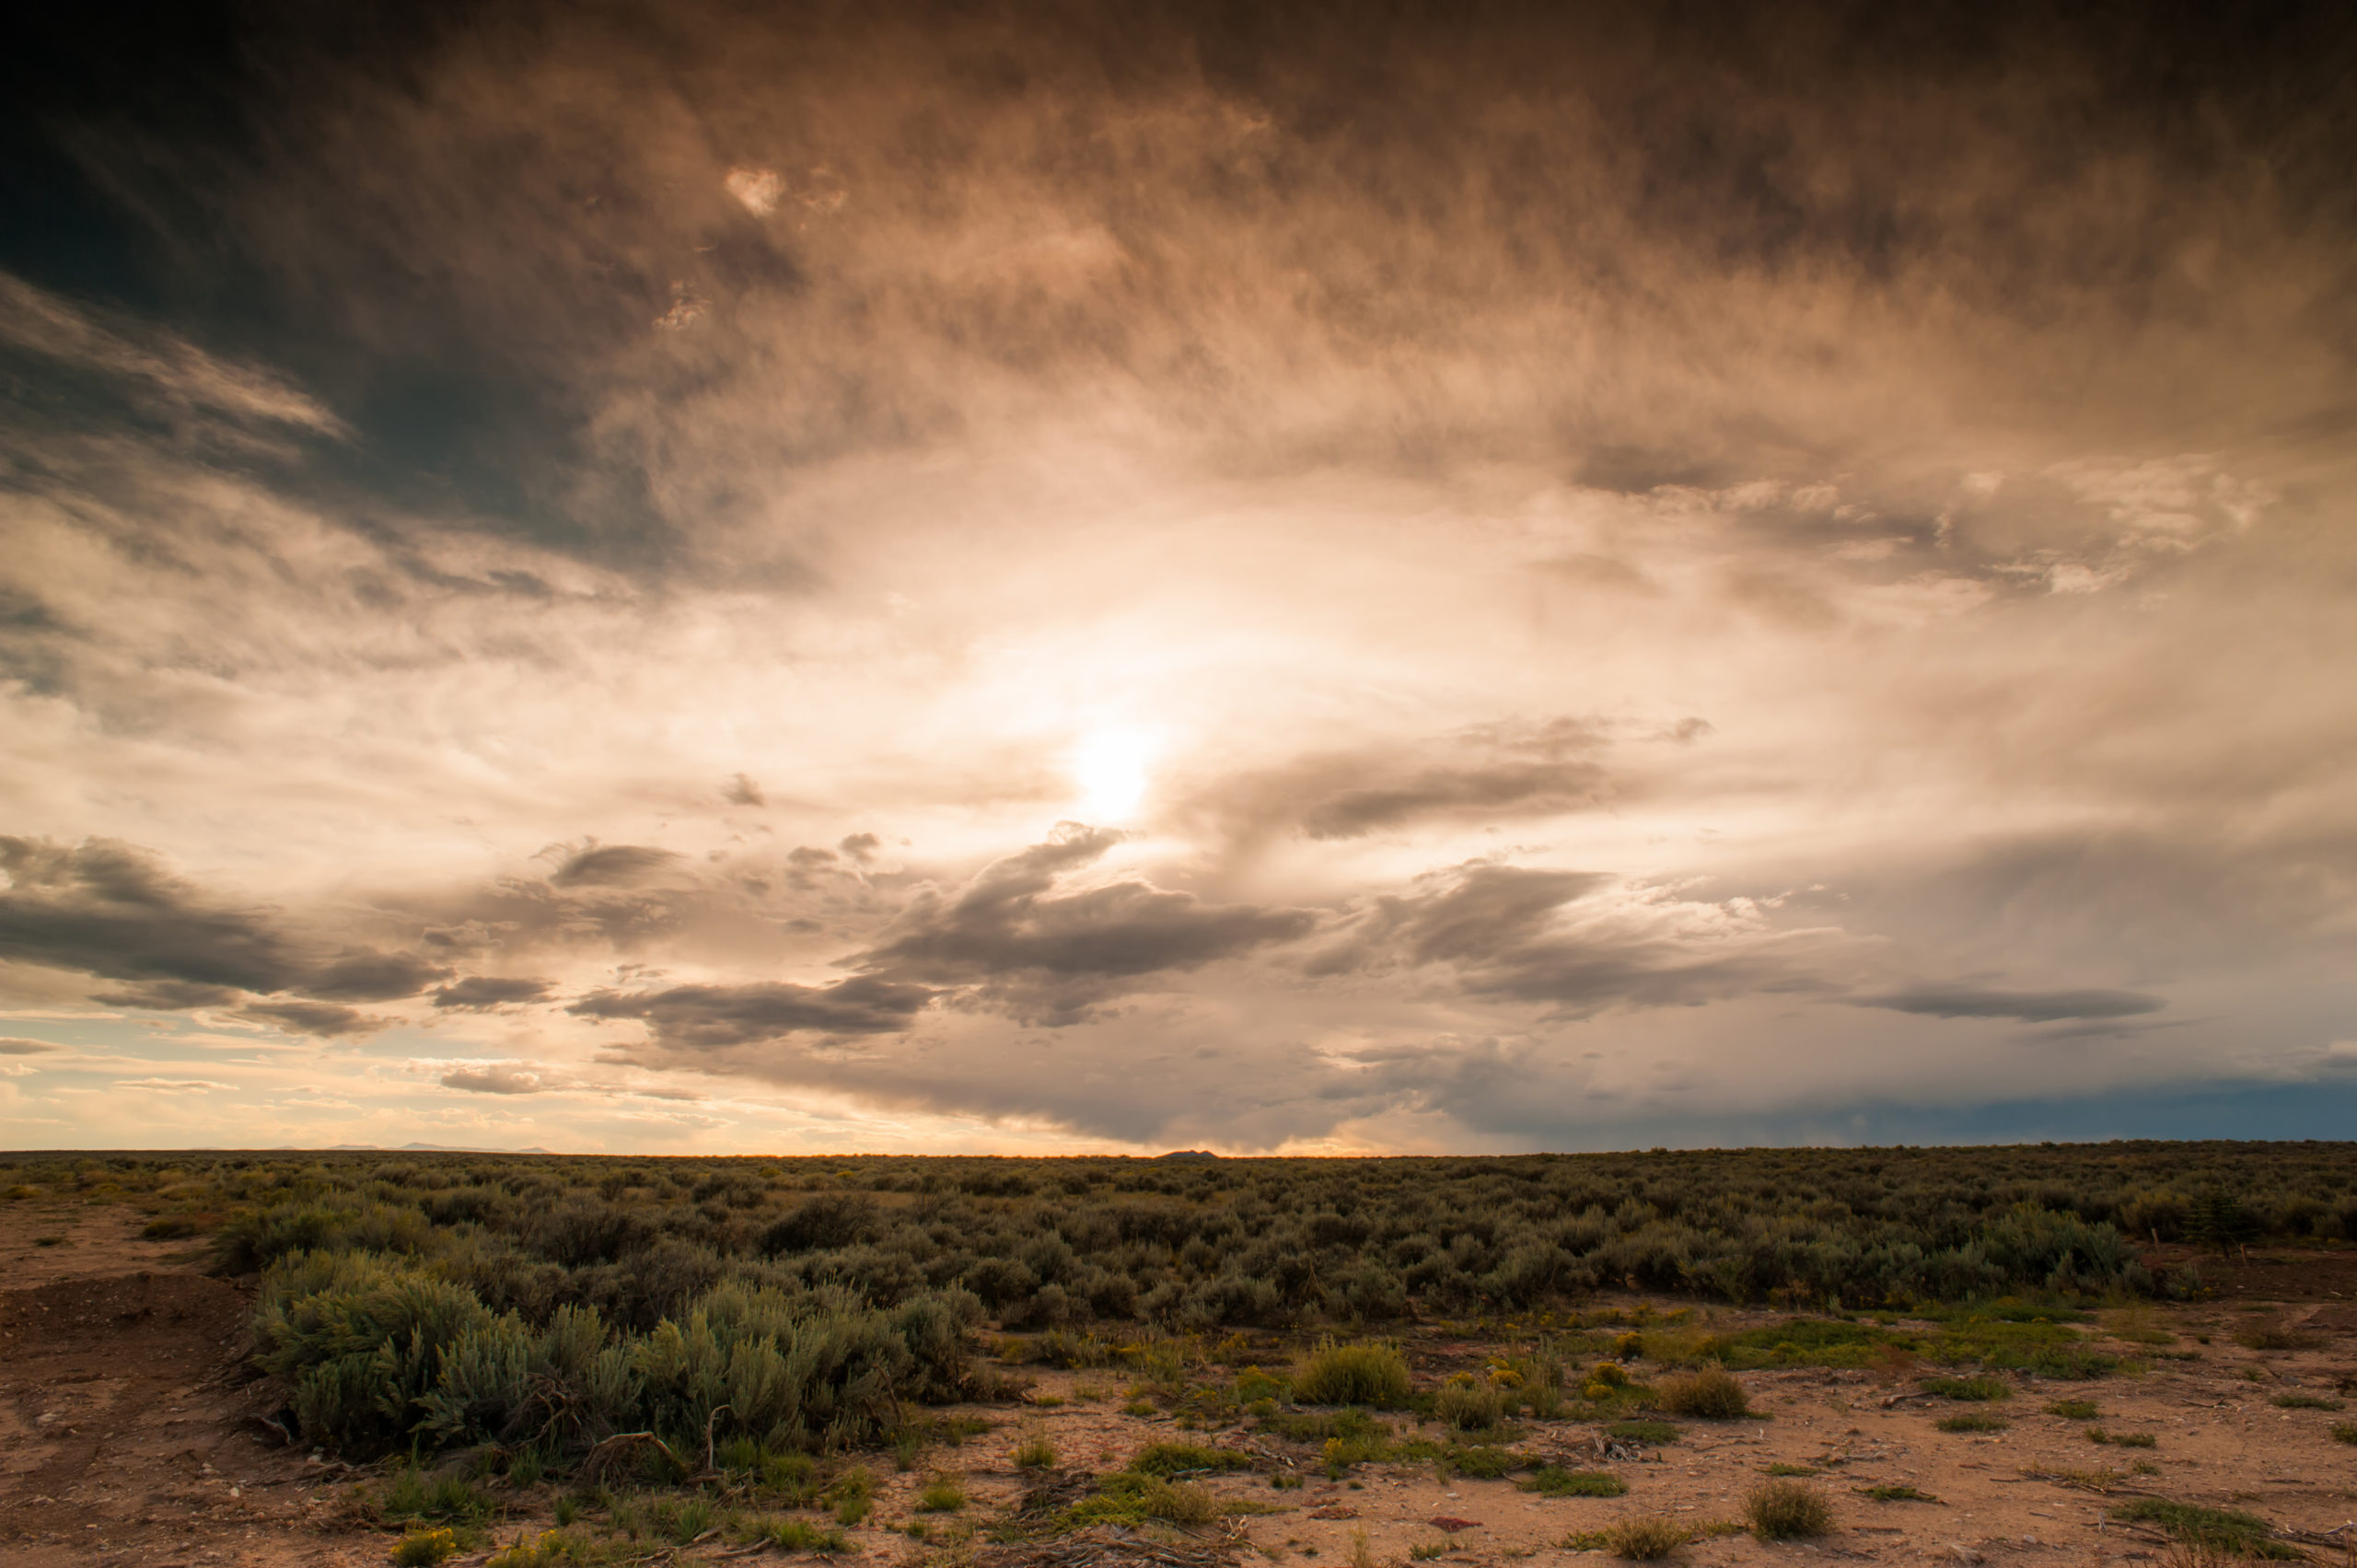 scenic photo of sunset over the Santa Fe desert and scrub brush